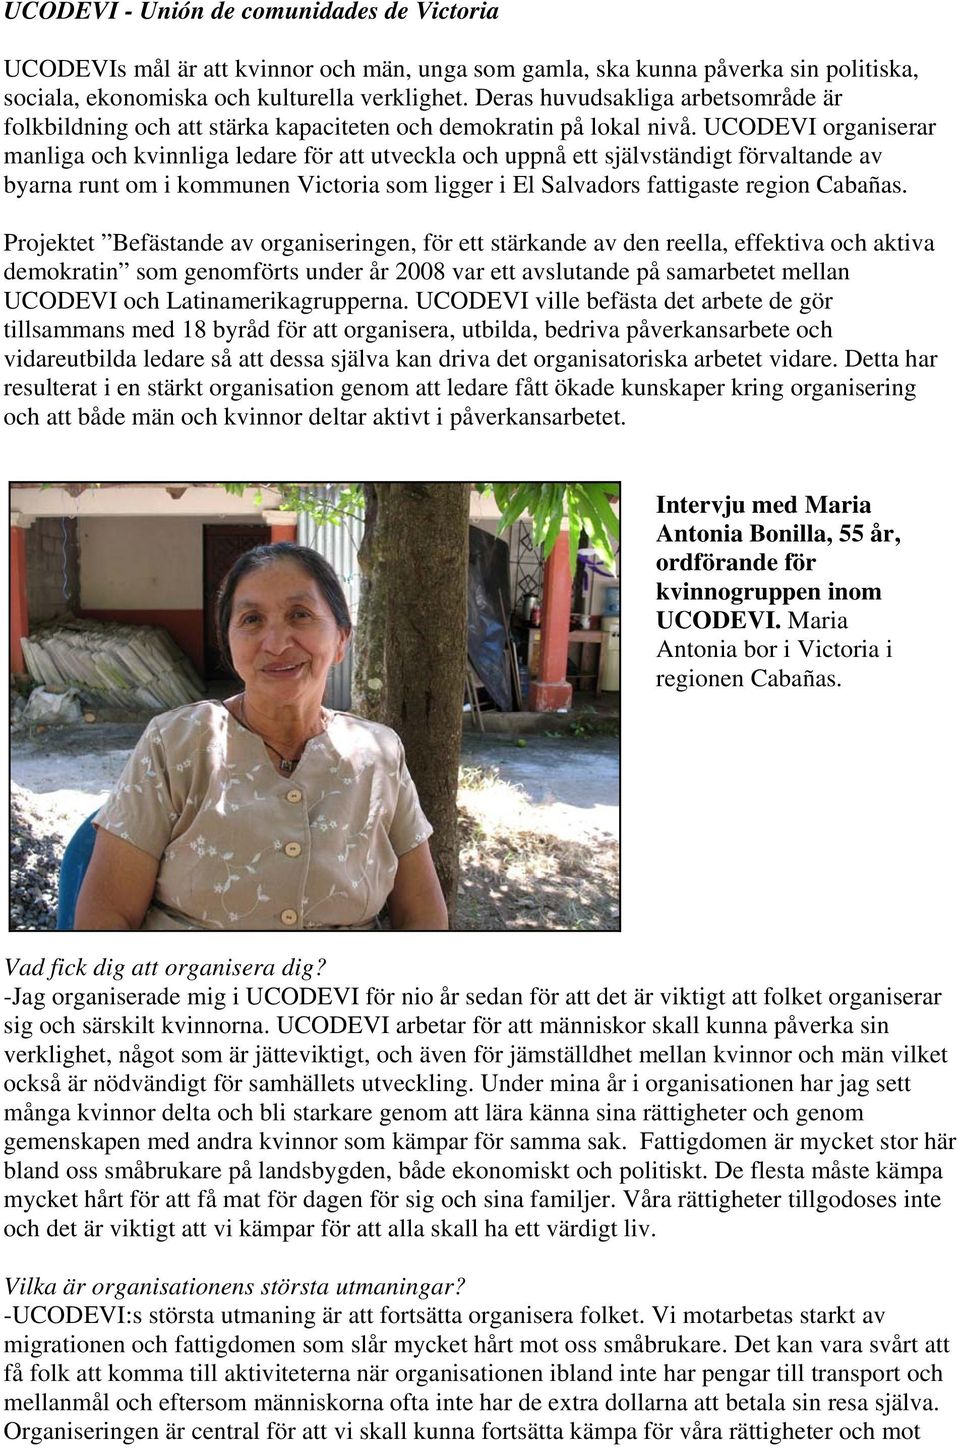 UCODEVI organiserar manliga och kvinnliga ledare för att utveckla och uppnå ett självständigt förvaltande av byarna runt om i kommunen Victoria som ligger i El Salvadors fattigaste region Cabañas.